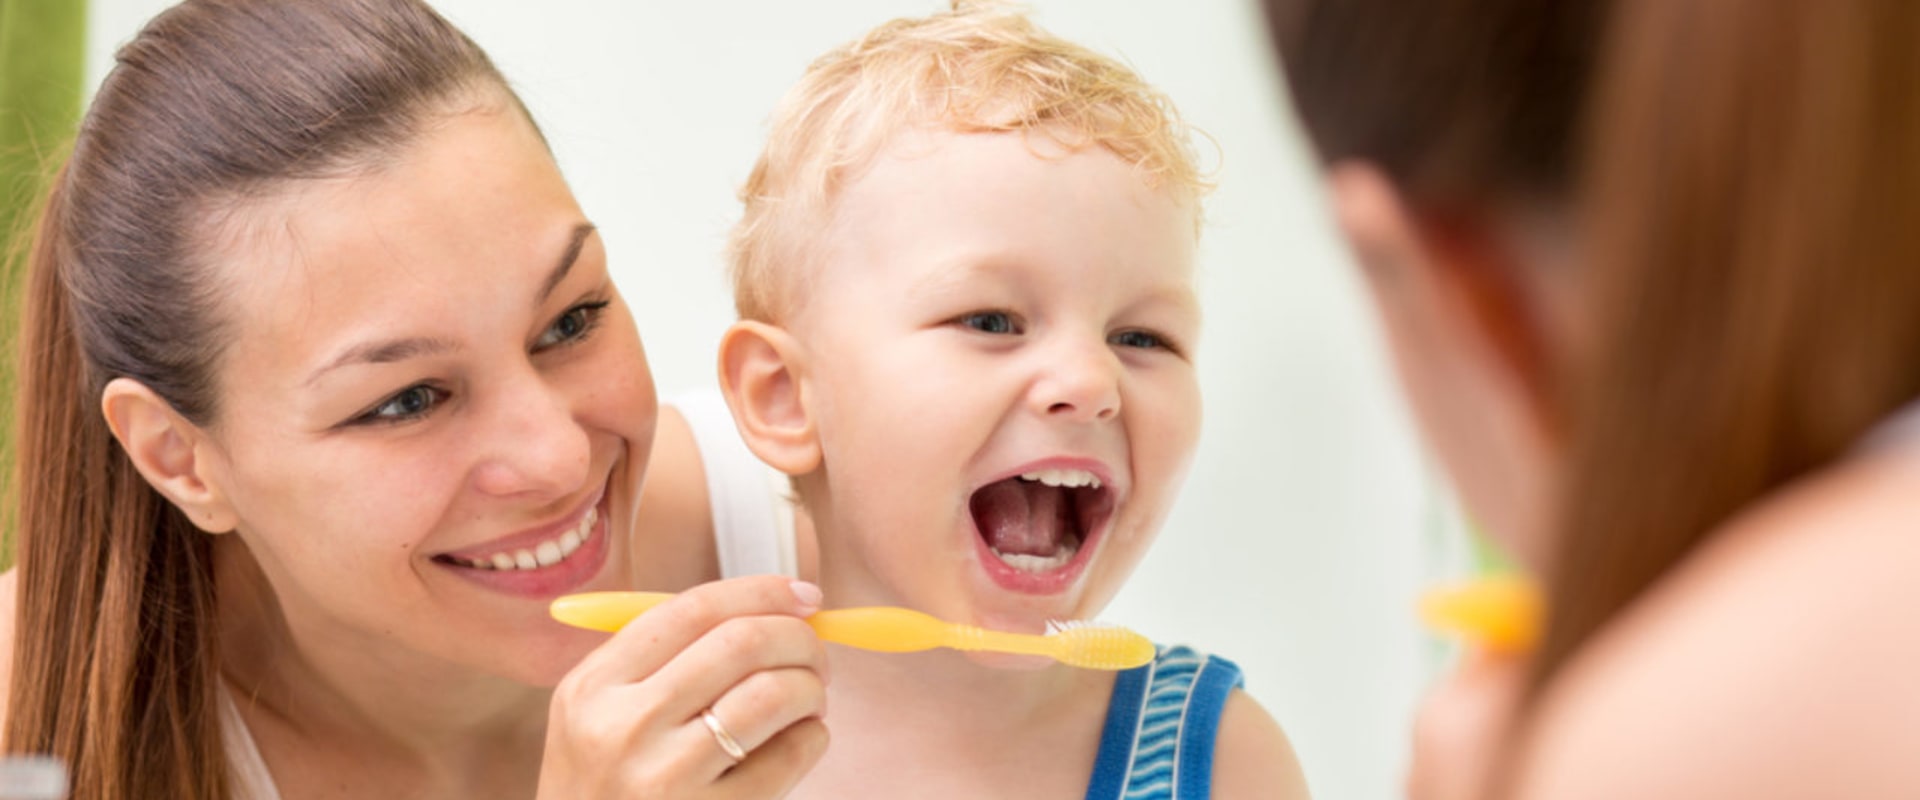 Fun Ways to Teach Kids Oral Hygiene